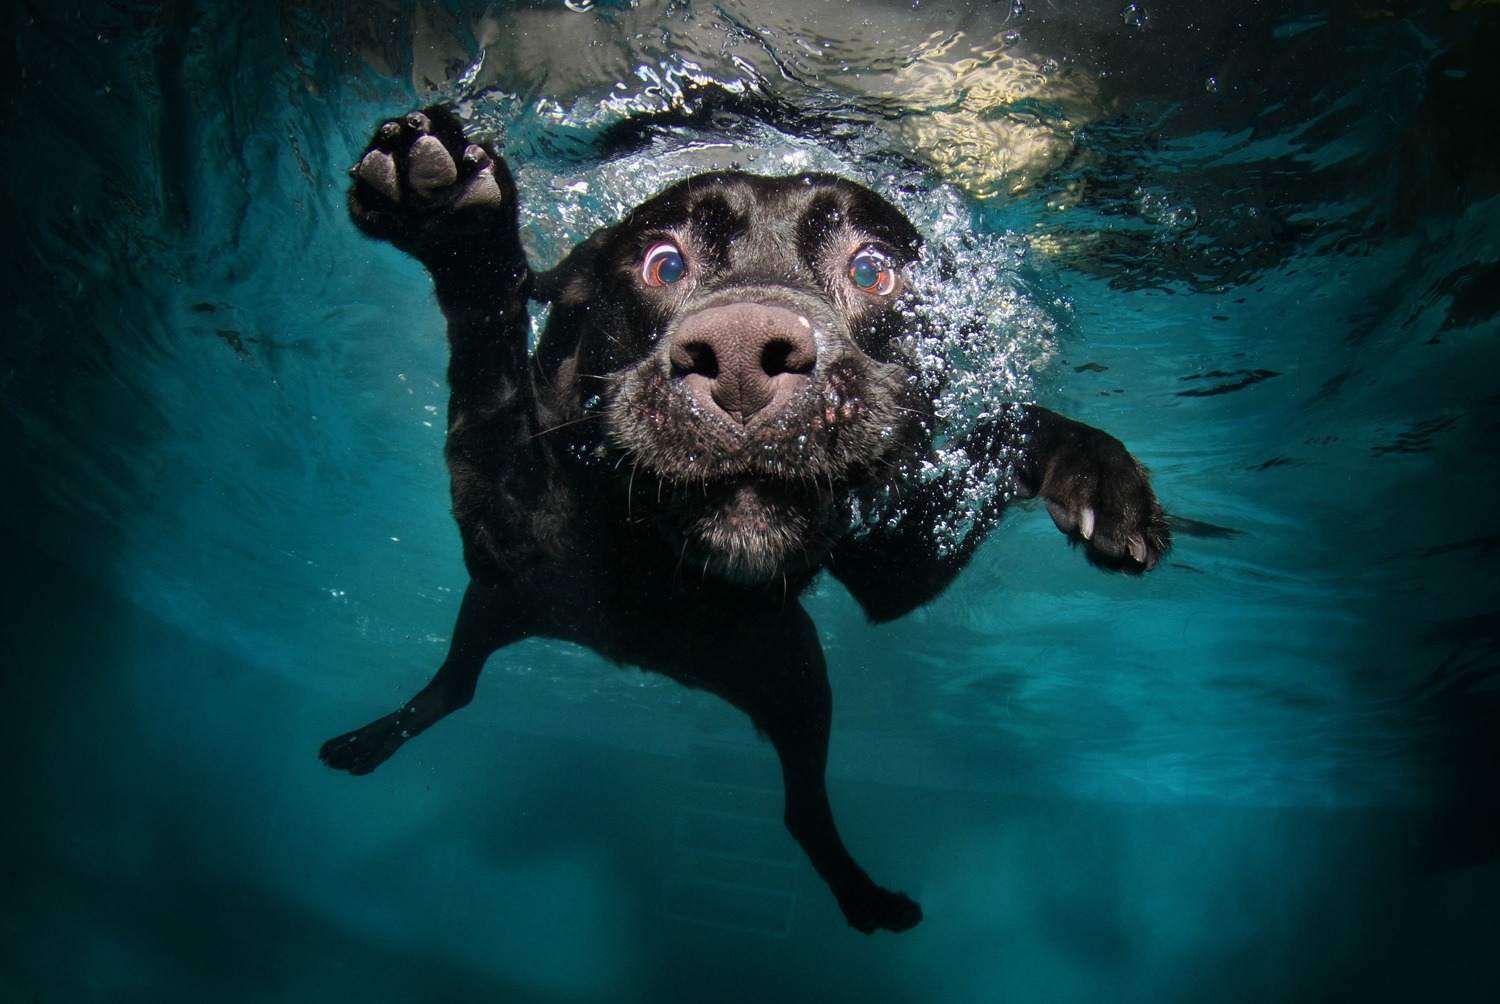 B-E-L-L-Y-F-L-O-P! Amazing photos of underwater dogs